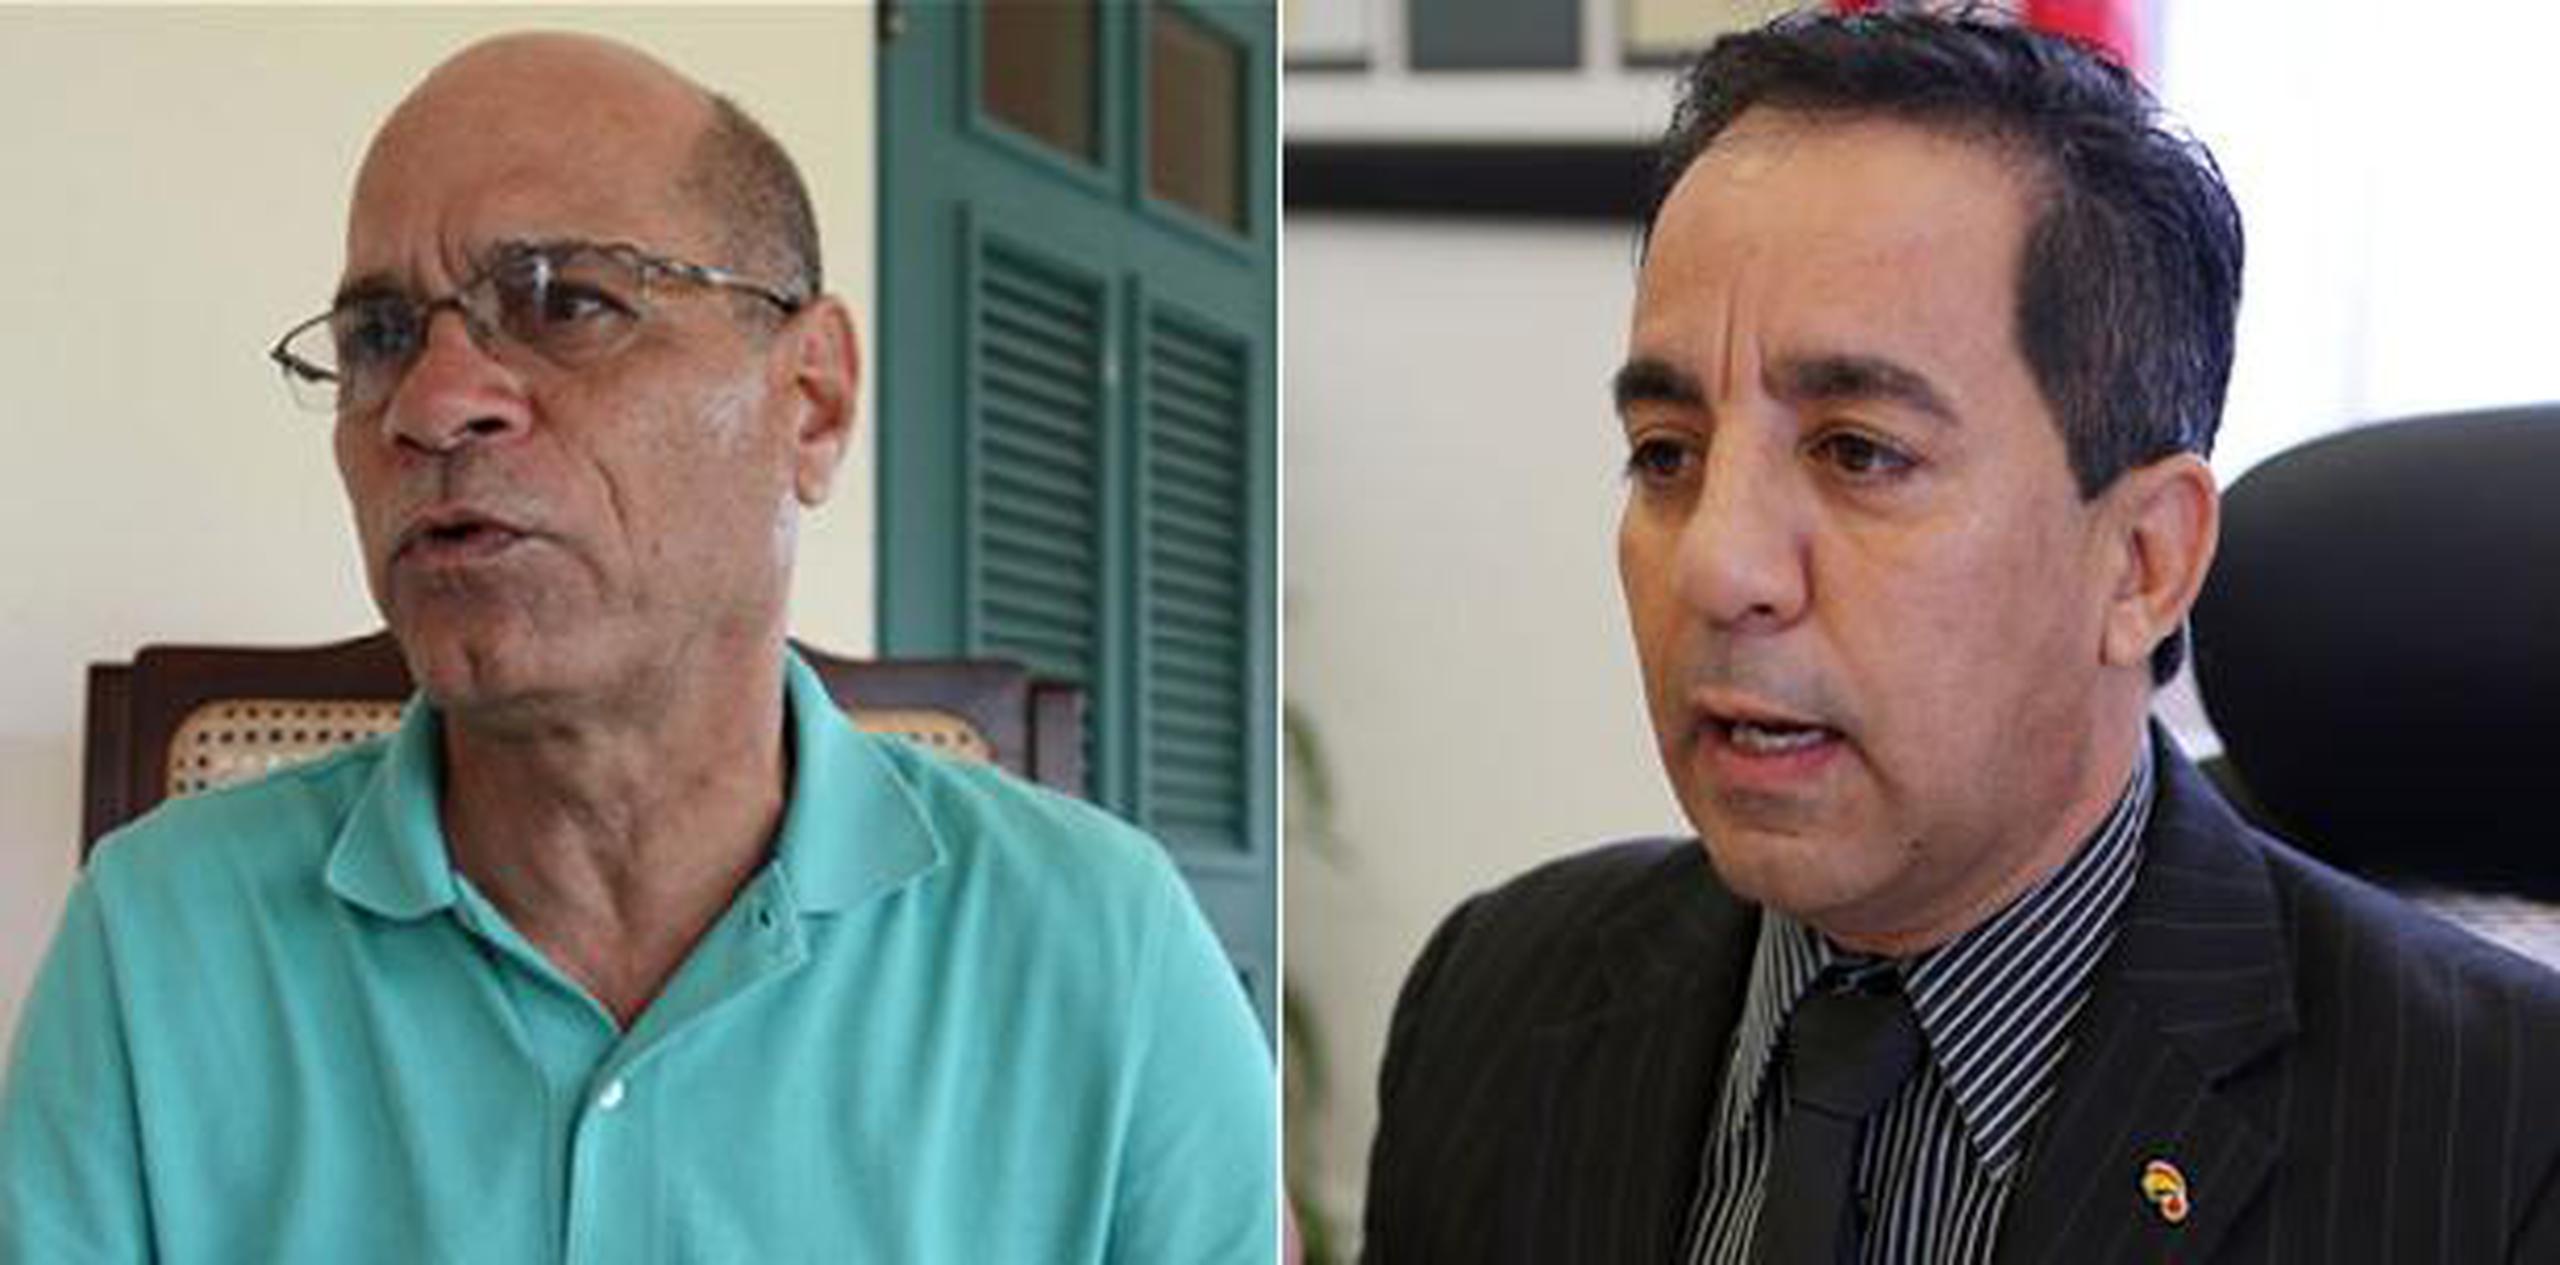 El legislador José “Pito” Torres (a la derecha) se querelló contra el alcalde de Santa Isabel, Enrique “Quique” Questell, por supuestamente haberlo agredido en una actividad. (Archivo)